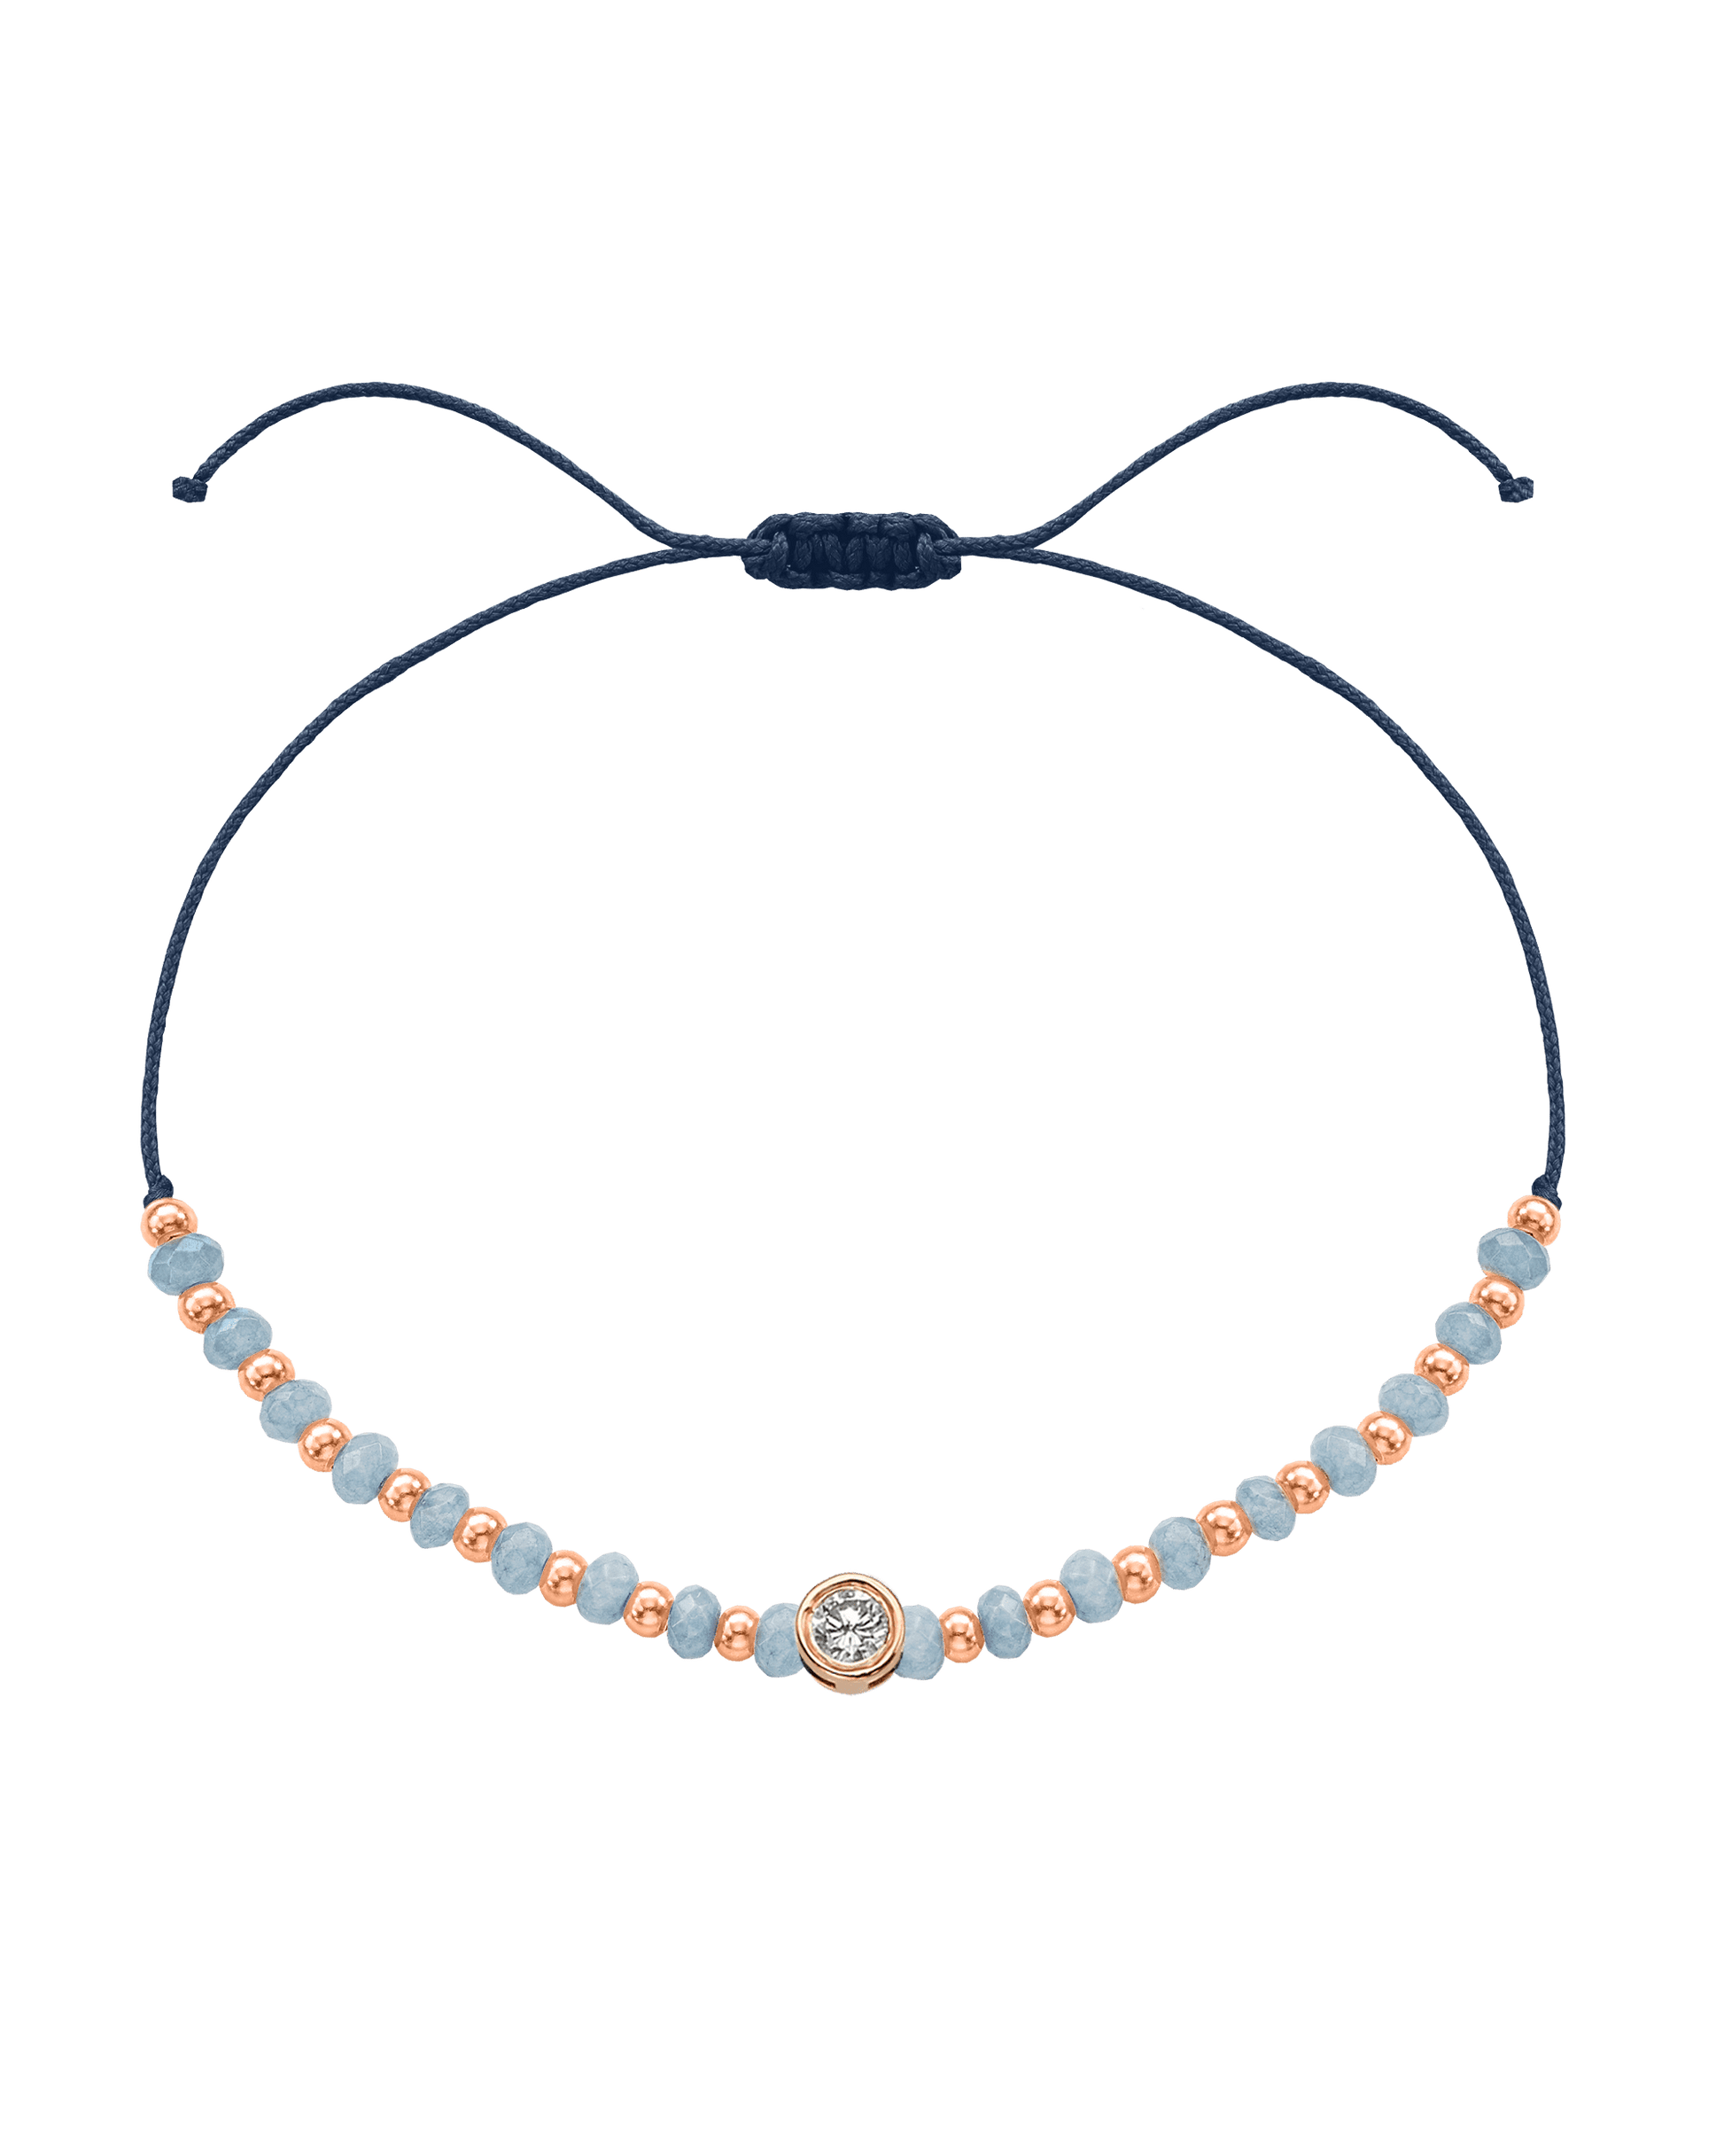 Celestite Gemstone String of Love Bracelet for Mindfulness - 14K Rose Gold Bracelets 14K Solid Gold Navy Blue Large: 0.1ct 